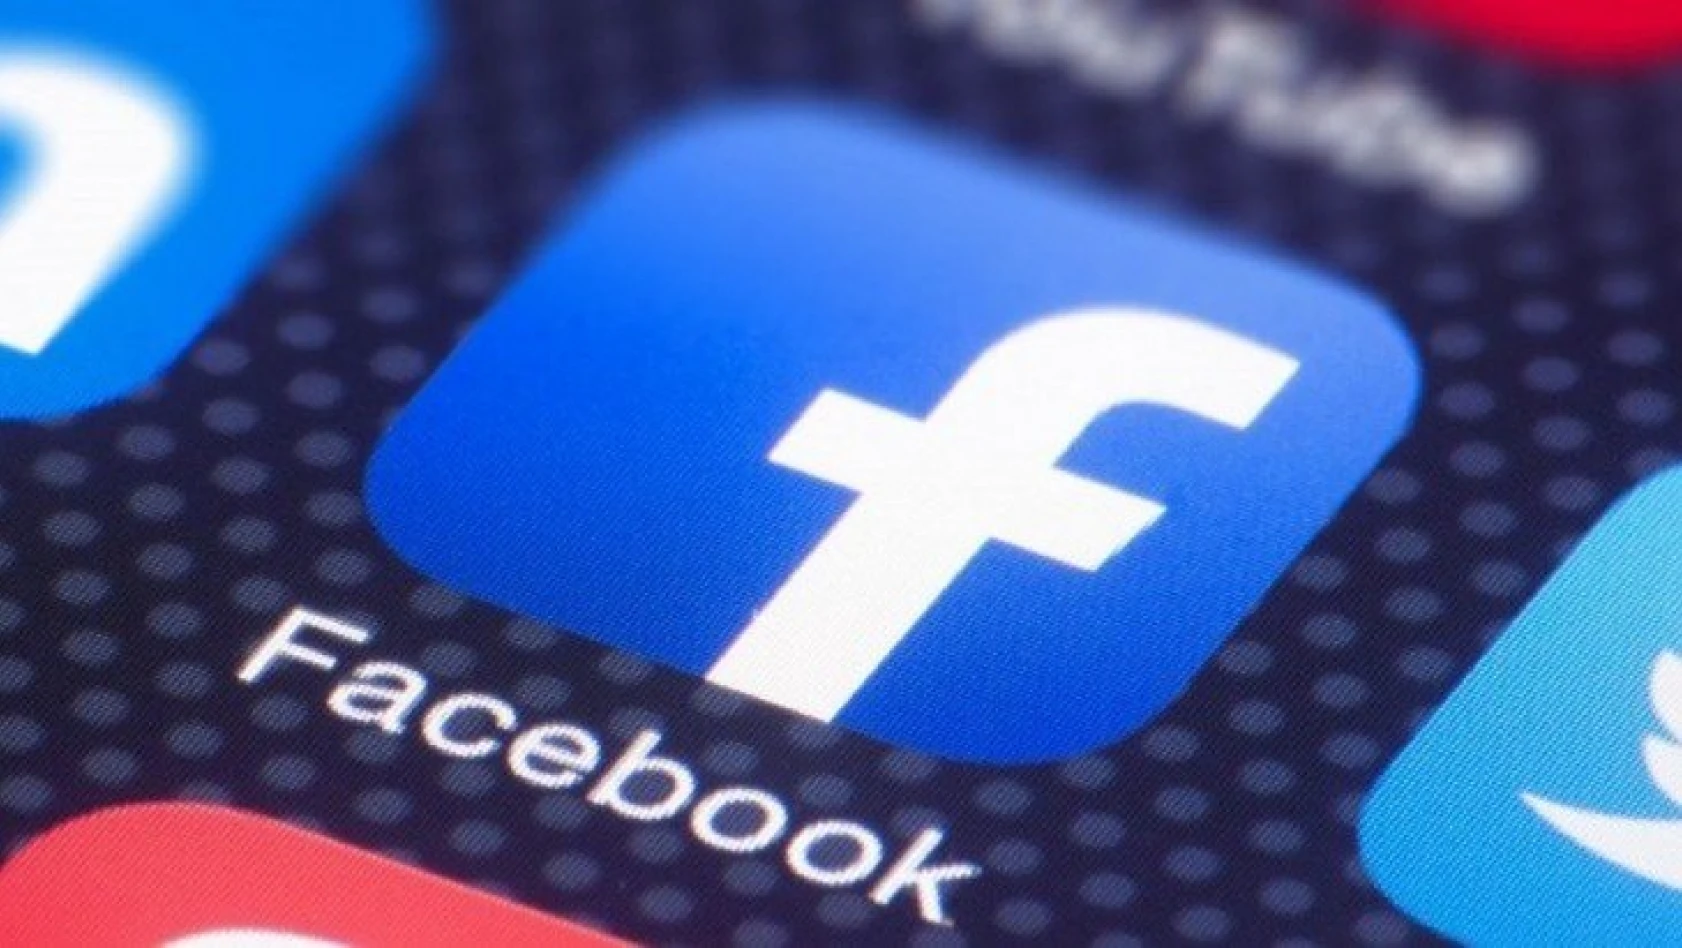 Haber sitelerine Facebook engeli